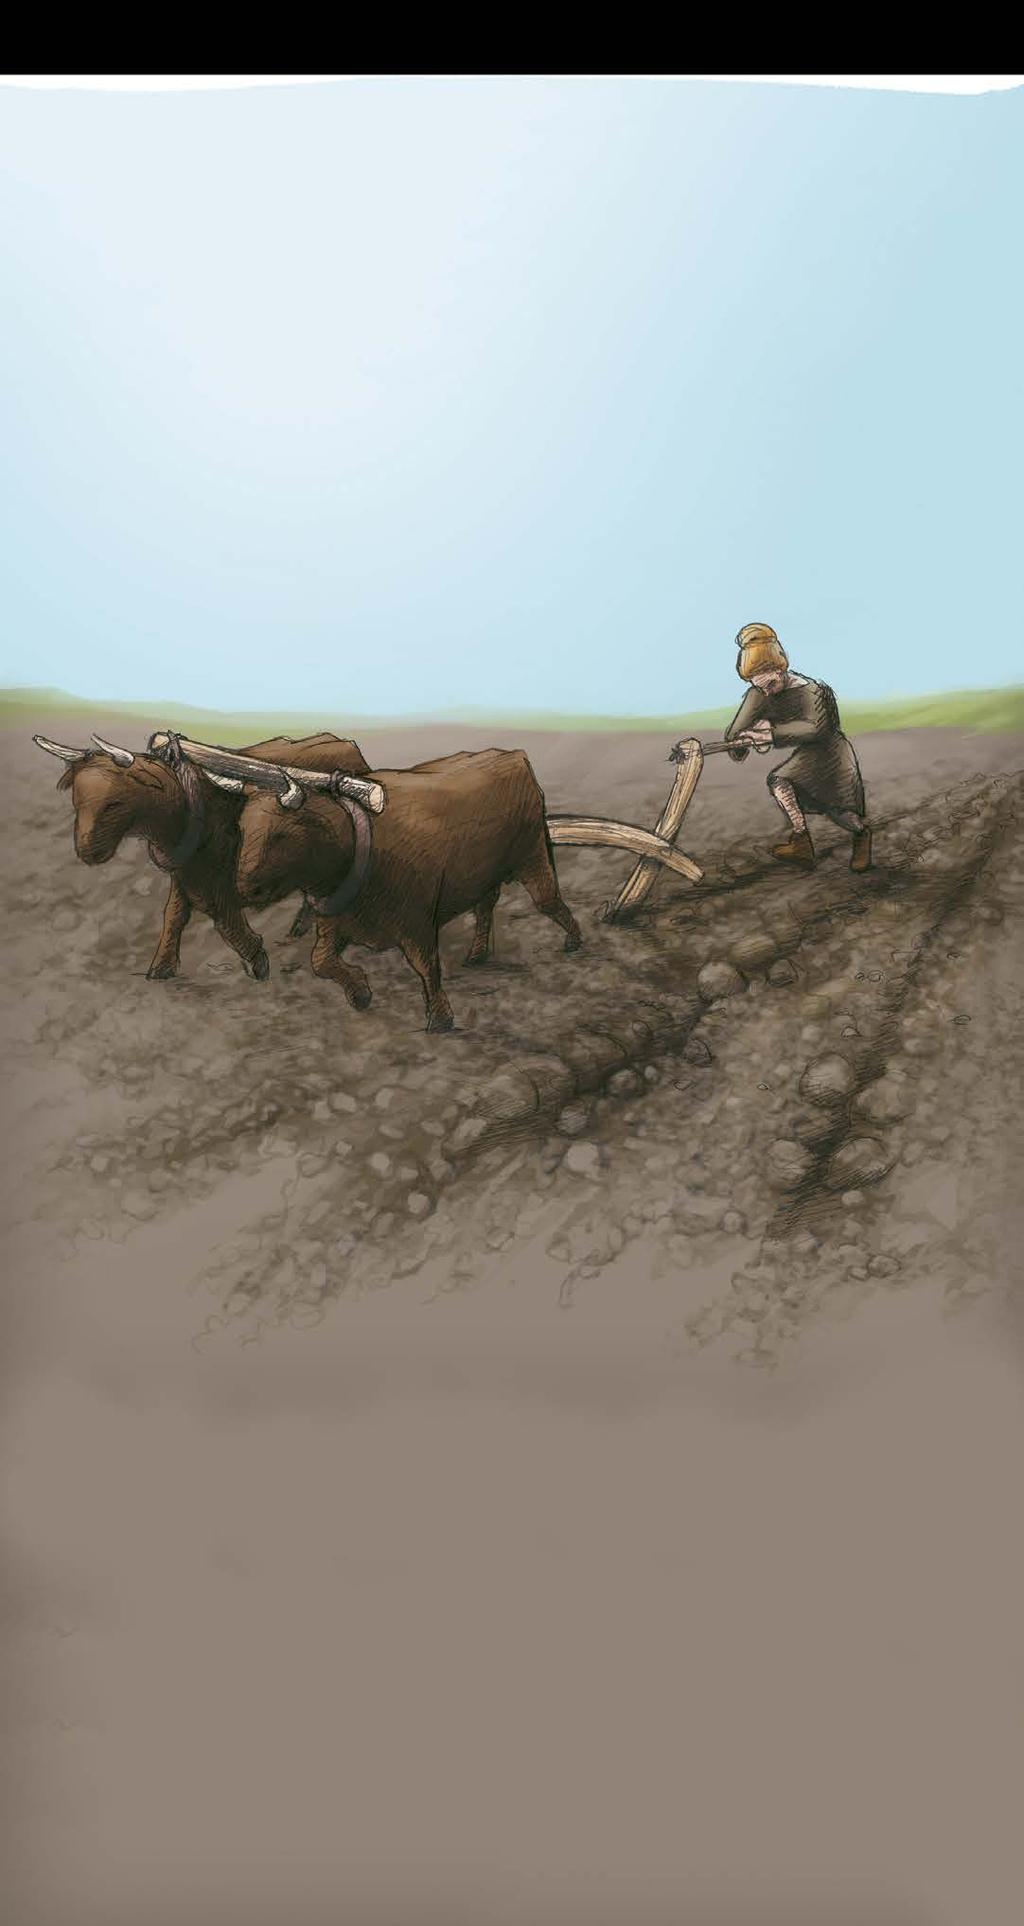 Jordbrukets redskap Under bronsålder var plogen ännu inte uppfunnen, man använde en årder. Skillnaden är att en plog vänder jorden medan ett årder rispar jorden.